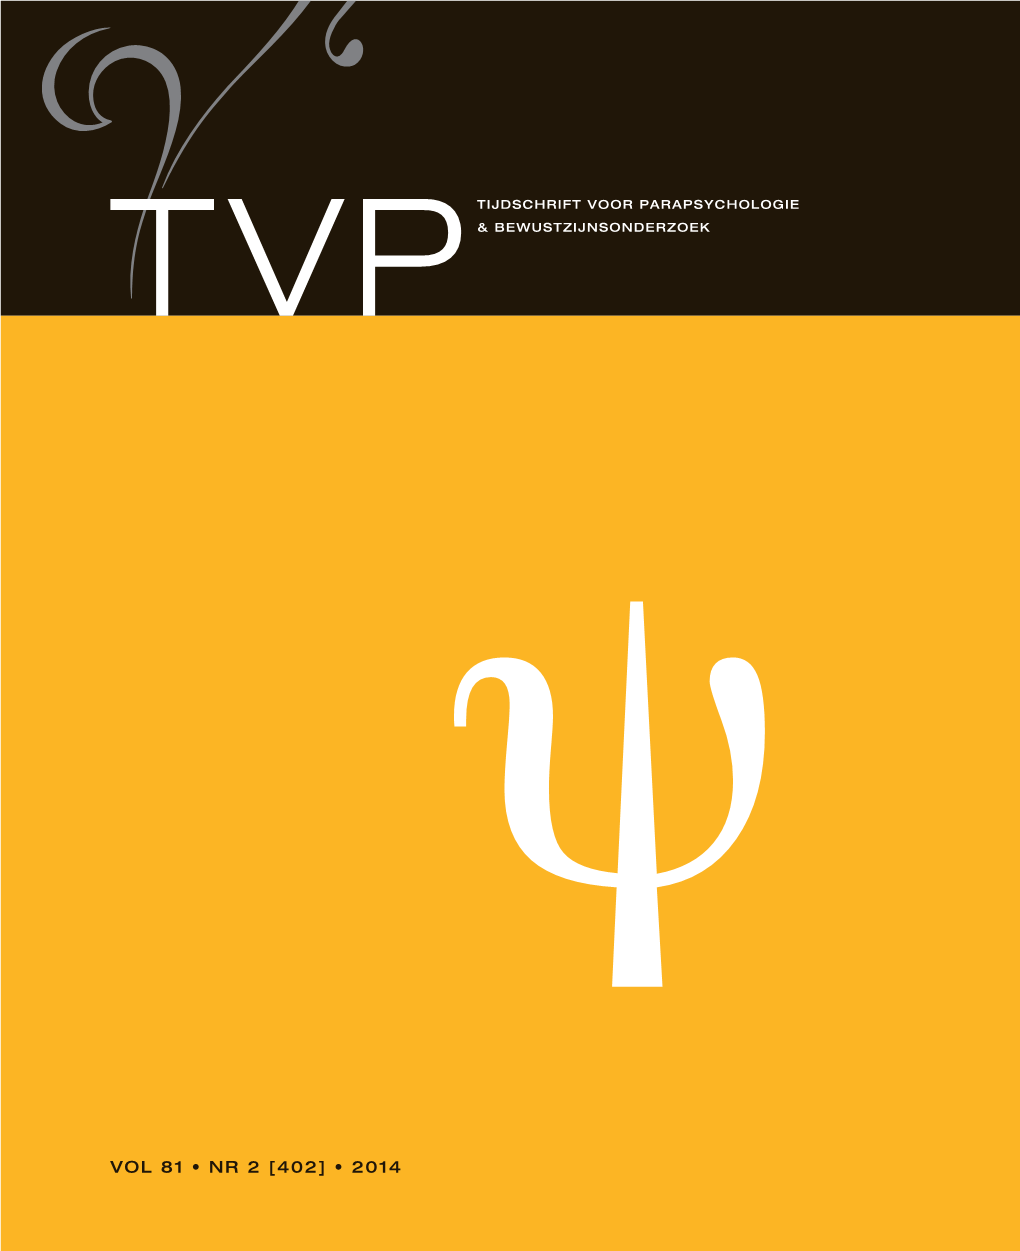 Vol 81 • Nr 2 [402] • 2014 Tijdschrift Voor Parapsychologie Tvp & Bewustzijnsonderzoek